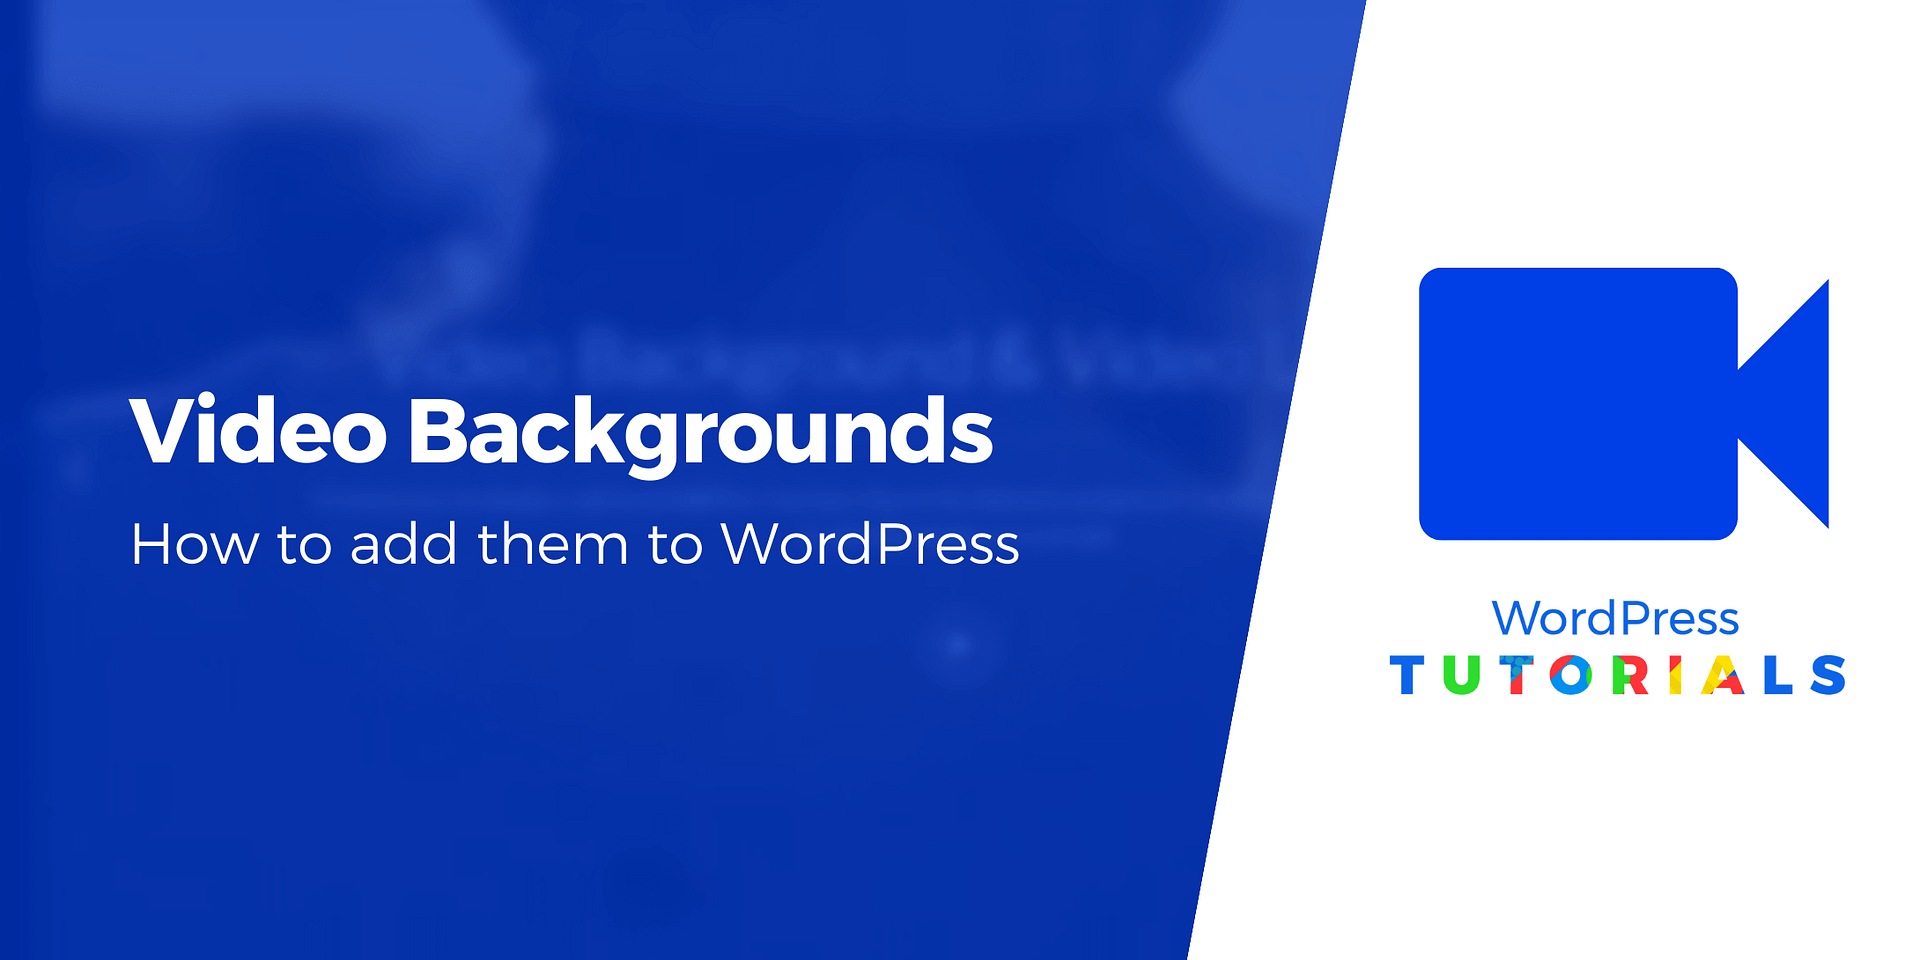 WordPress Video Background là công cụ tuyệt vời giúp cho trang web của bạn trở nên cuốn hút và độc đáo hơn. Với chức năng này, bạn có thể thêm video nền vào trang web của mình chỉ trong vài bước đơn giản và dễ dàng.